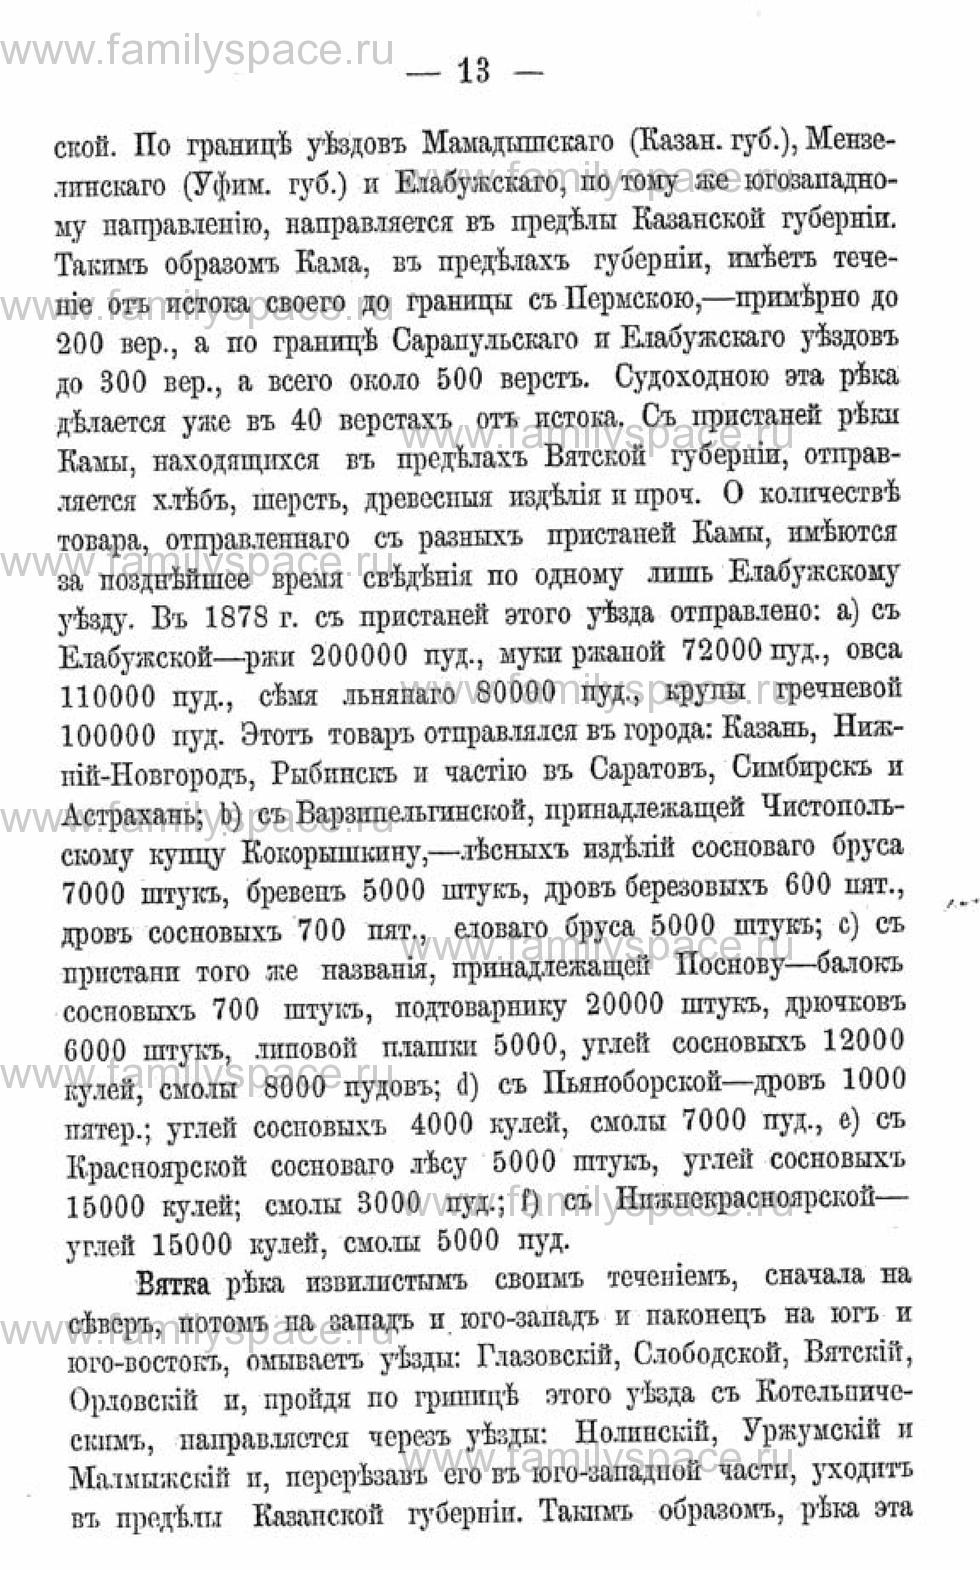 Поиск по фамилии - Календарь Вятской губернии - 1880, страница 2013